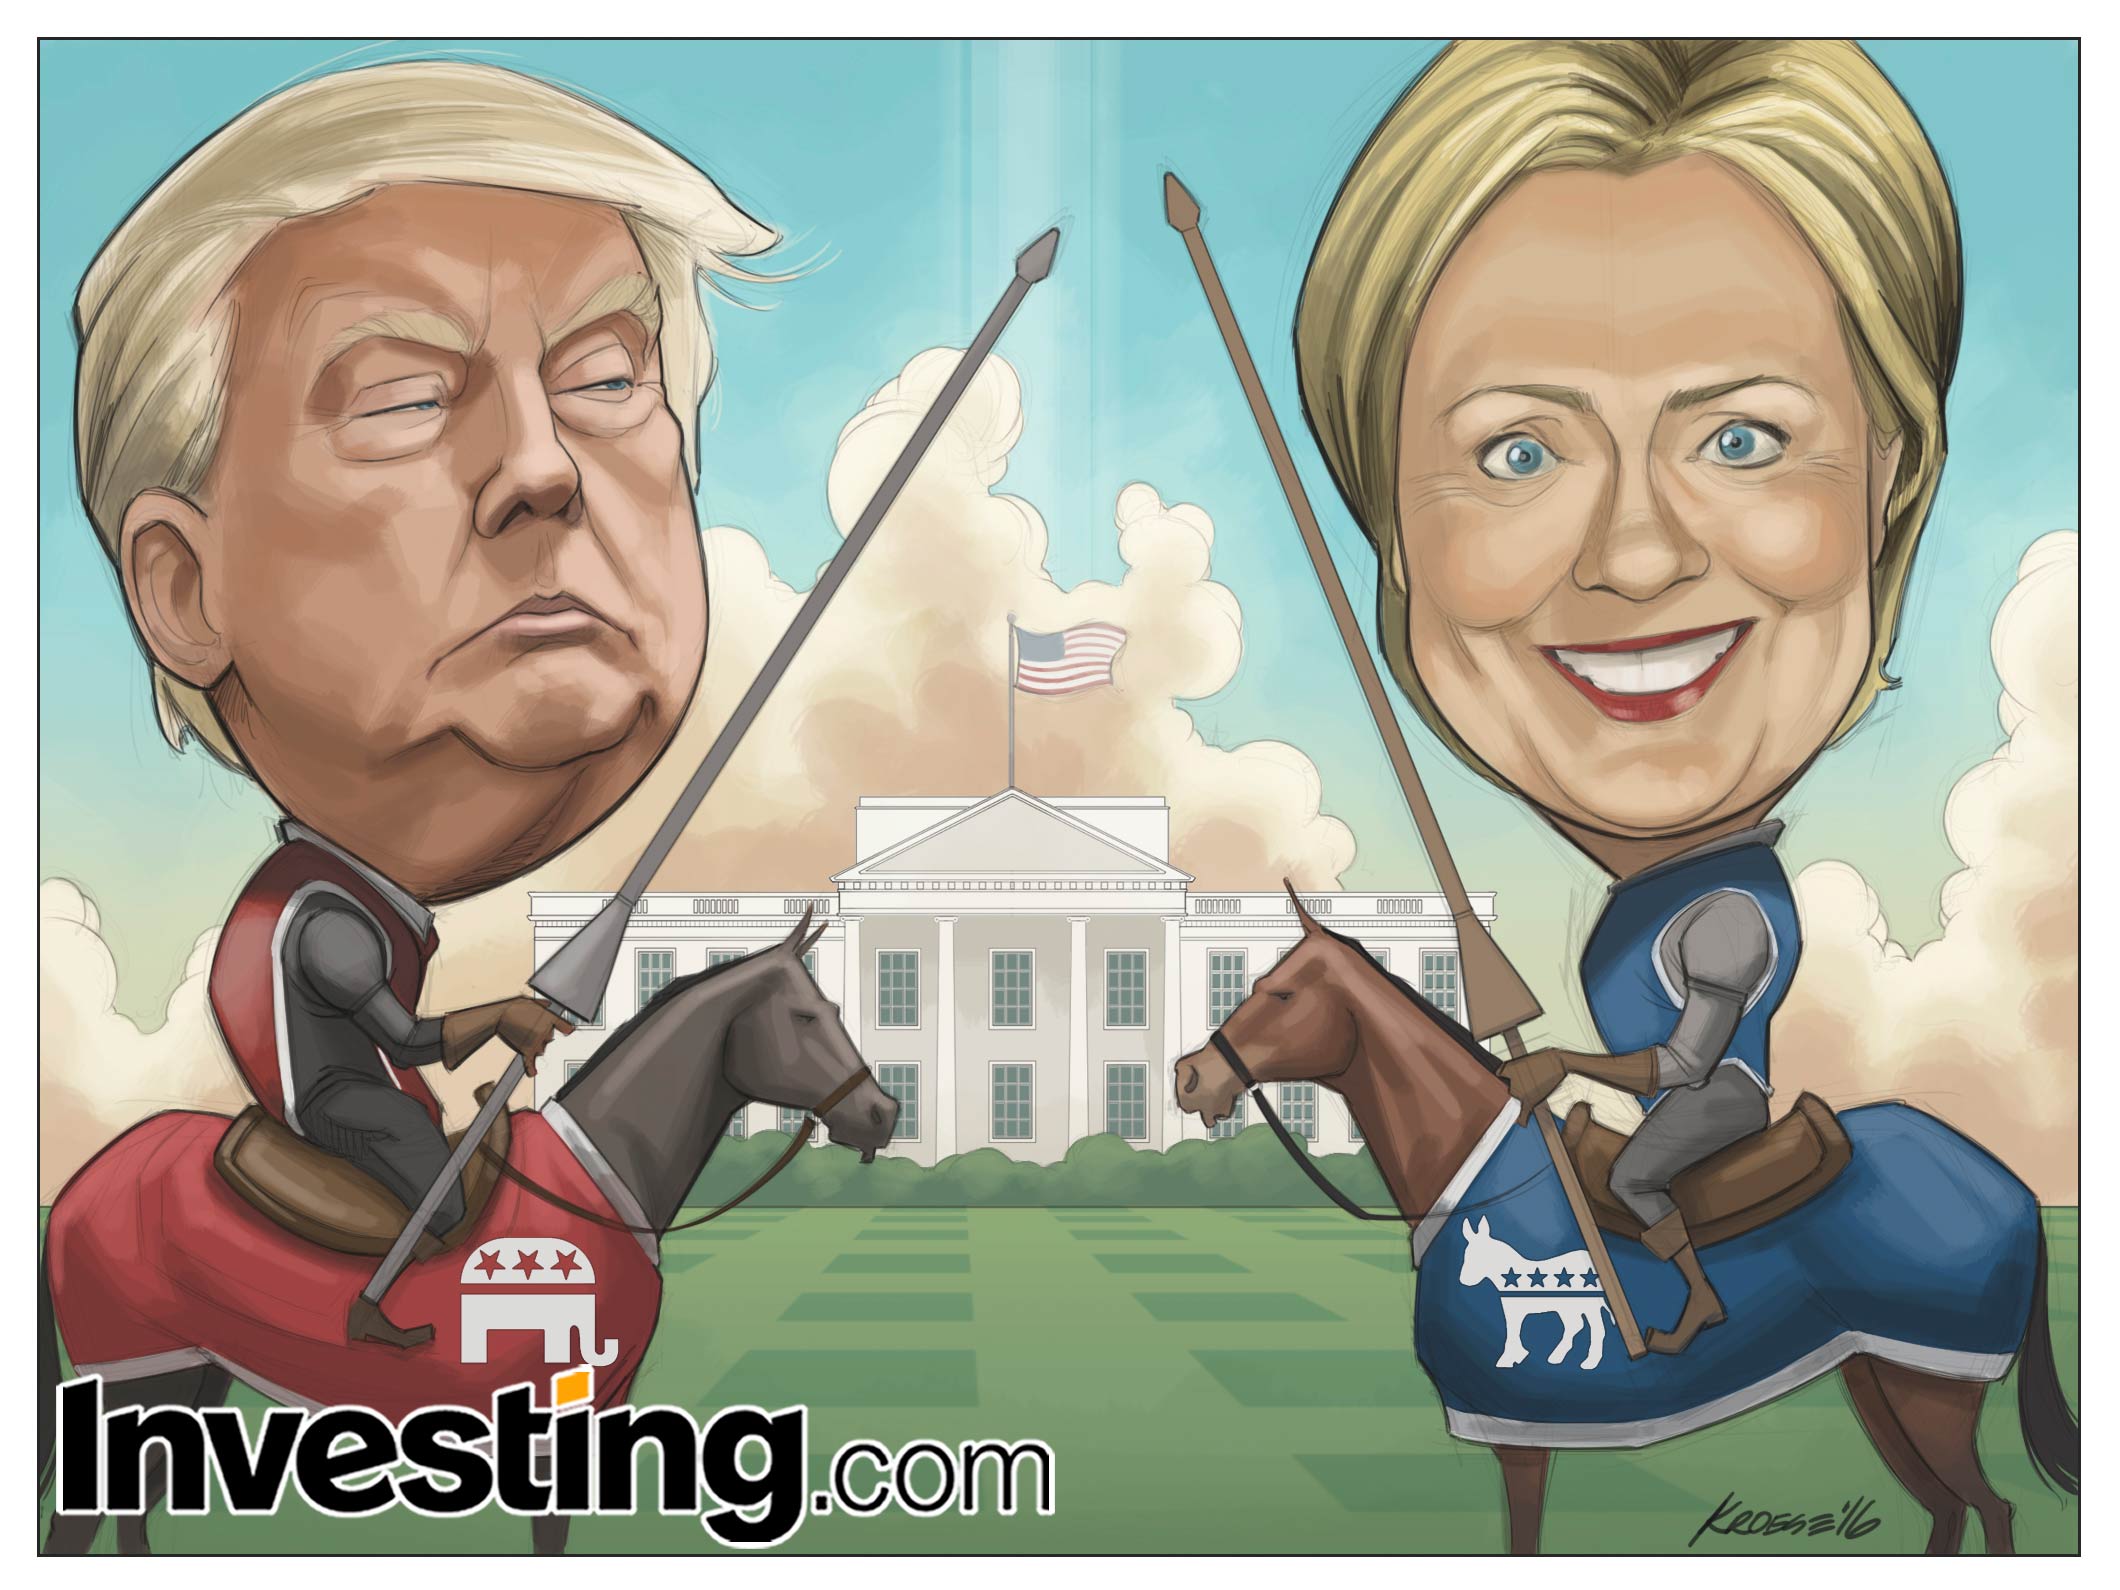 De Amerikaanse presidentsrace is begonnen. Wie gaat er winnen: Trump of Hillary?